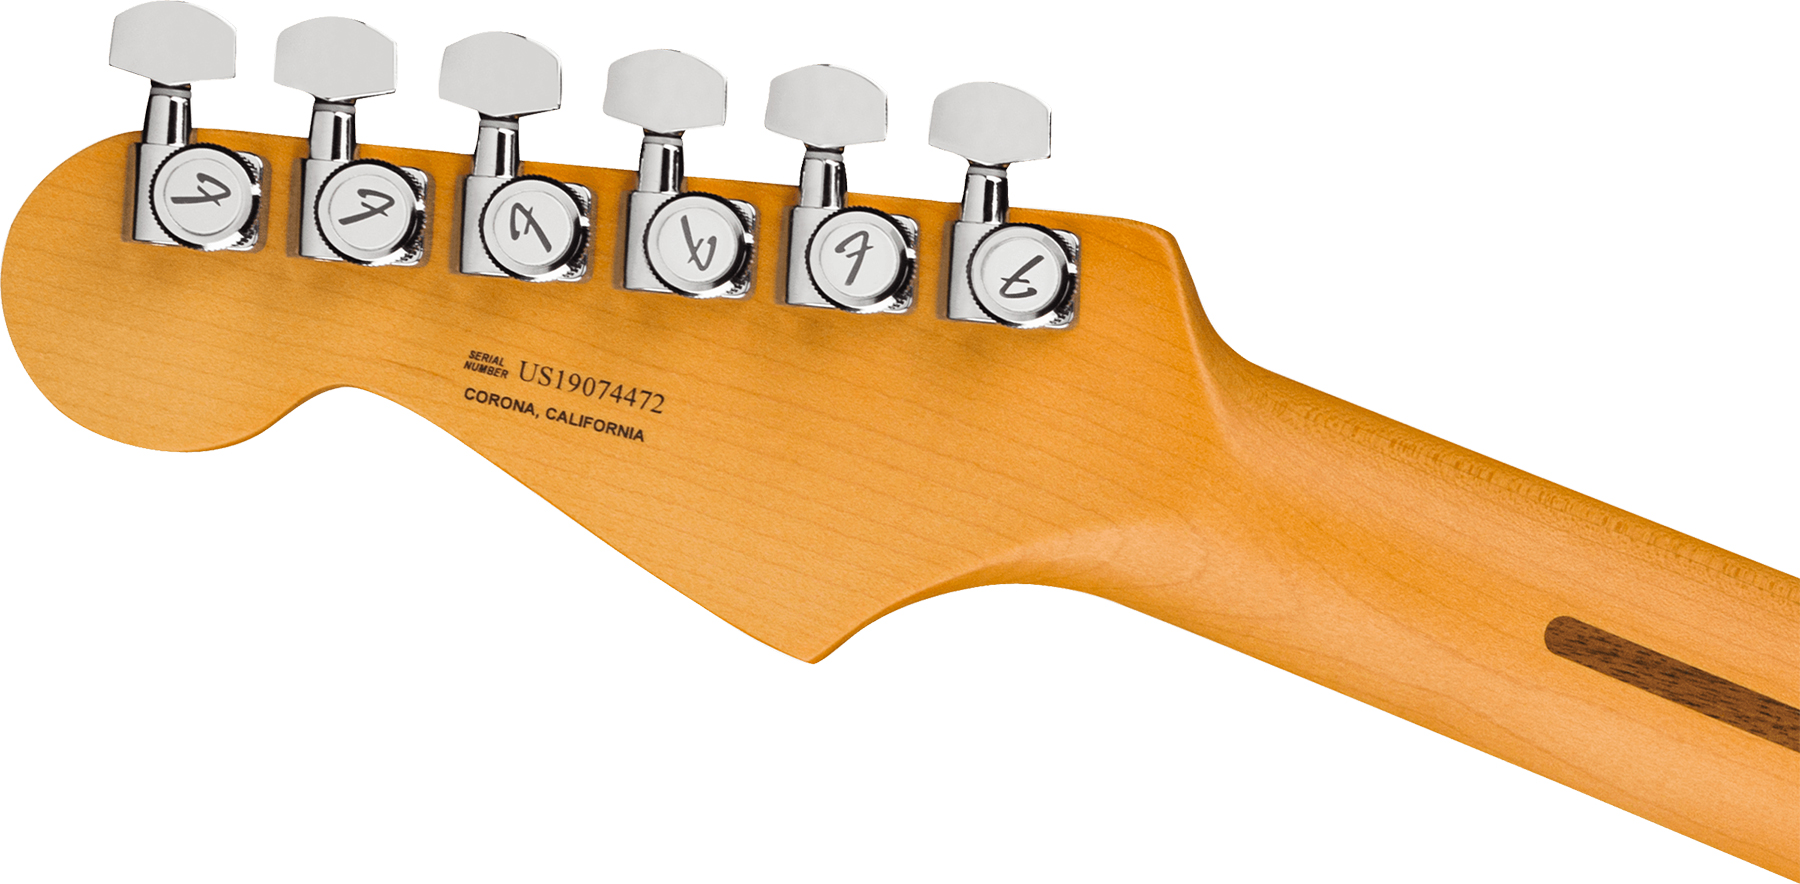 Fender Strat American Ultra 2019 Usa Mn - Mocha Burst - Guitarra eléctrica con forma de str. - Variation 1